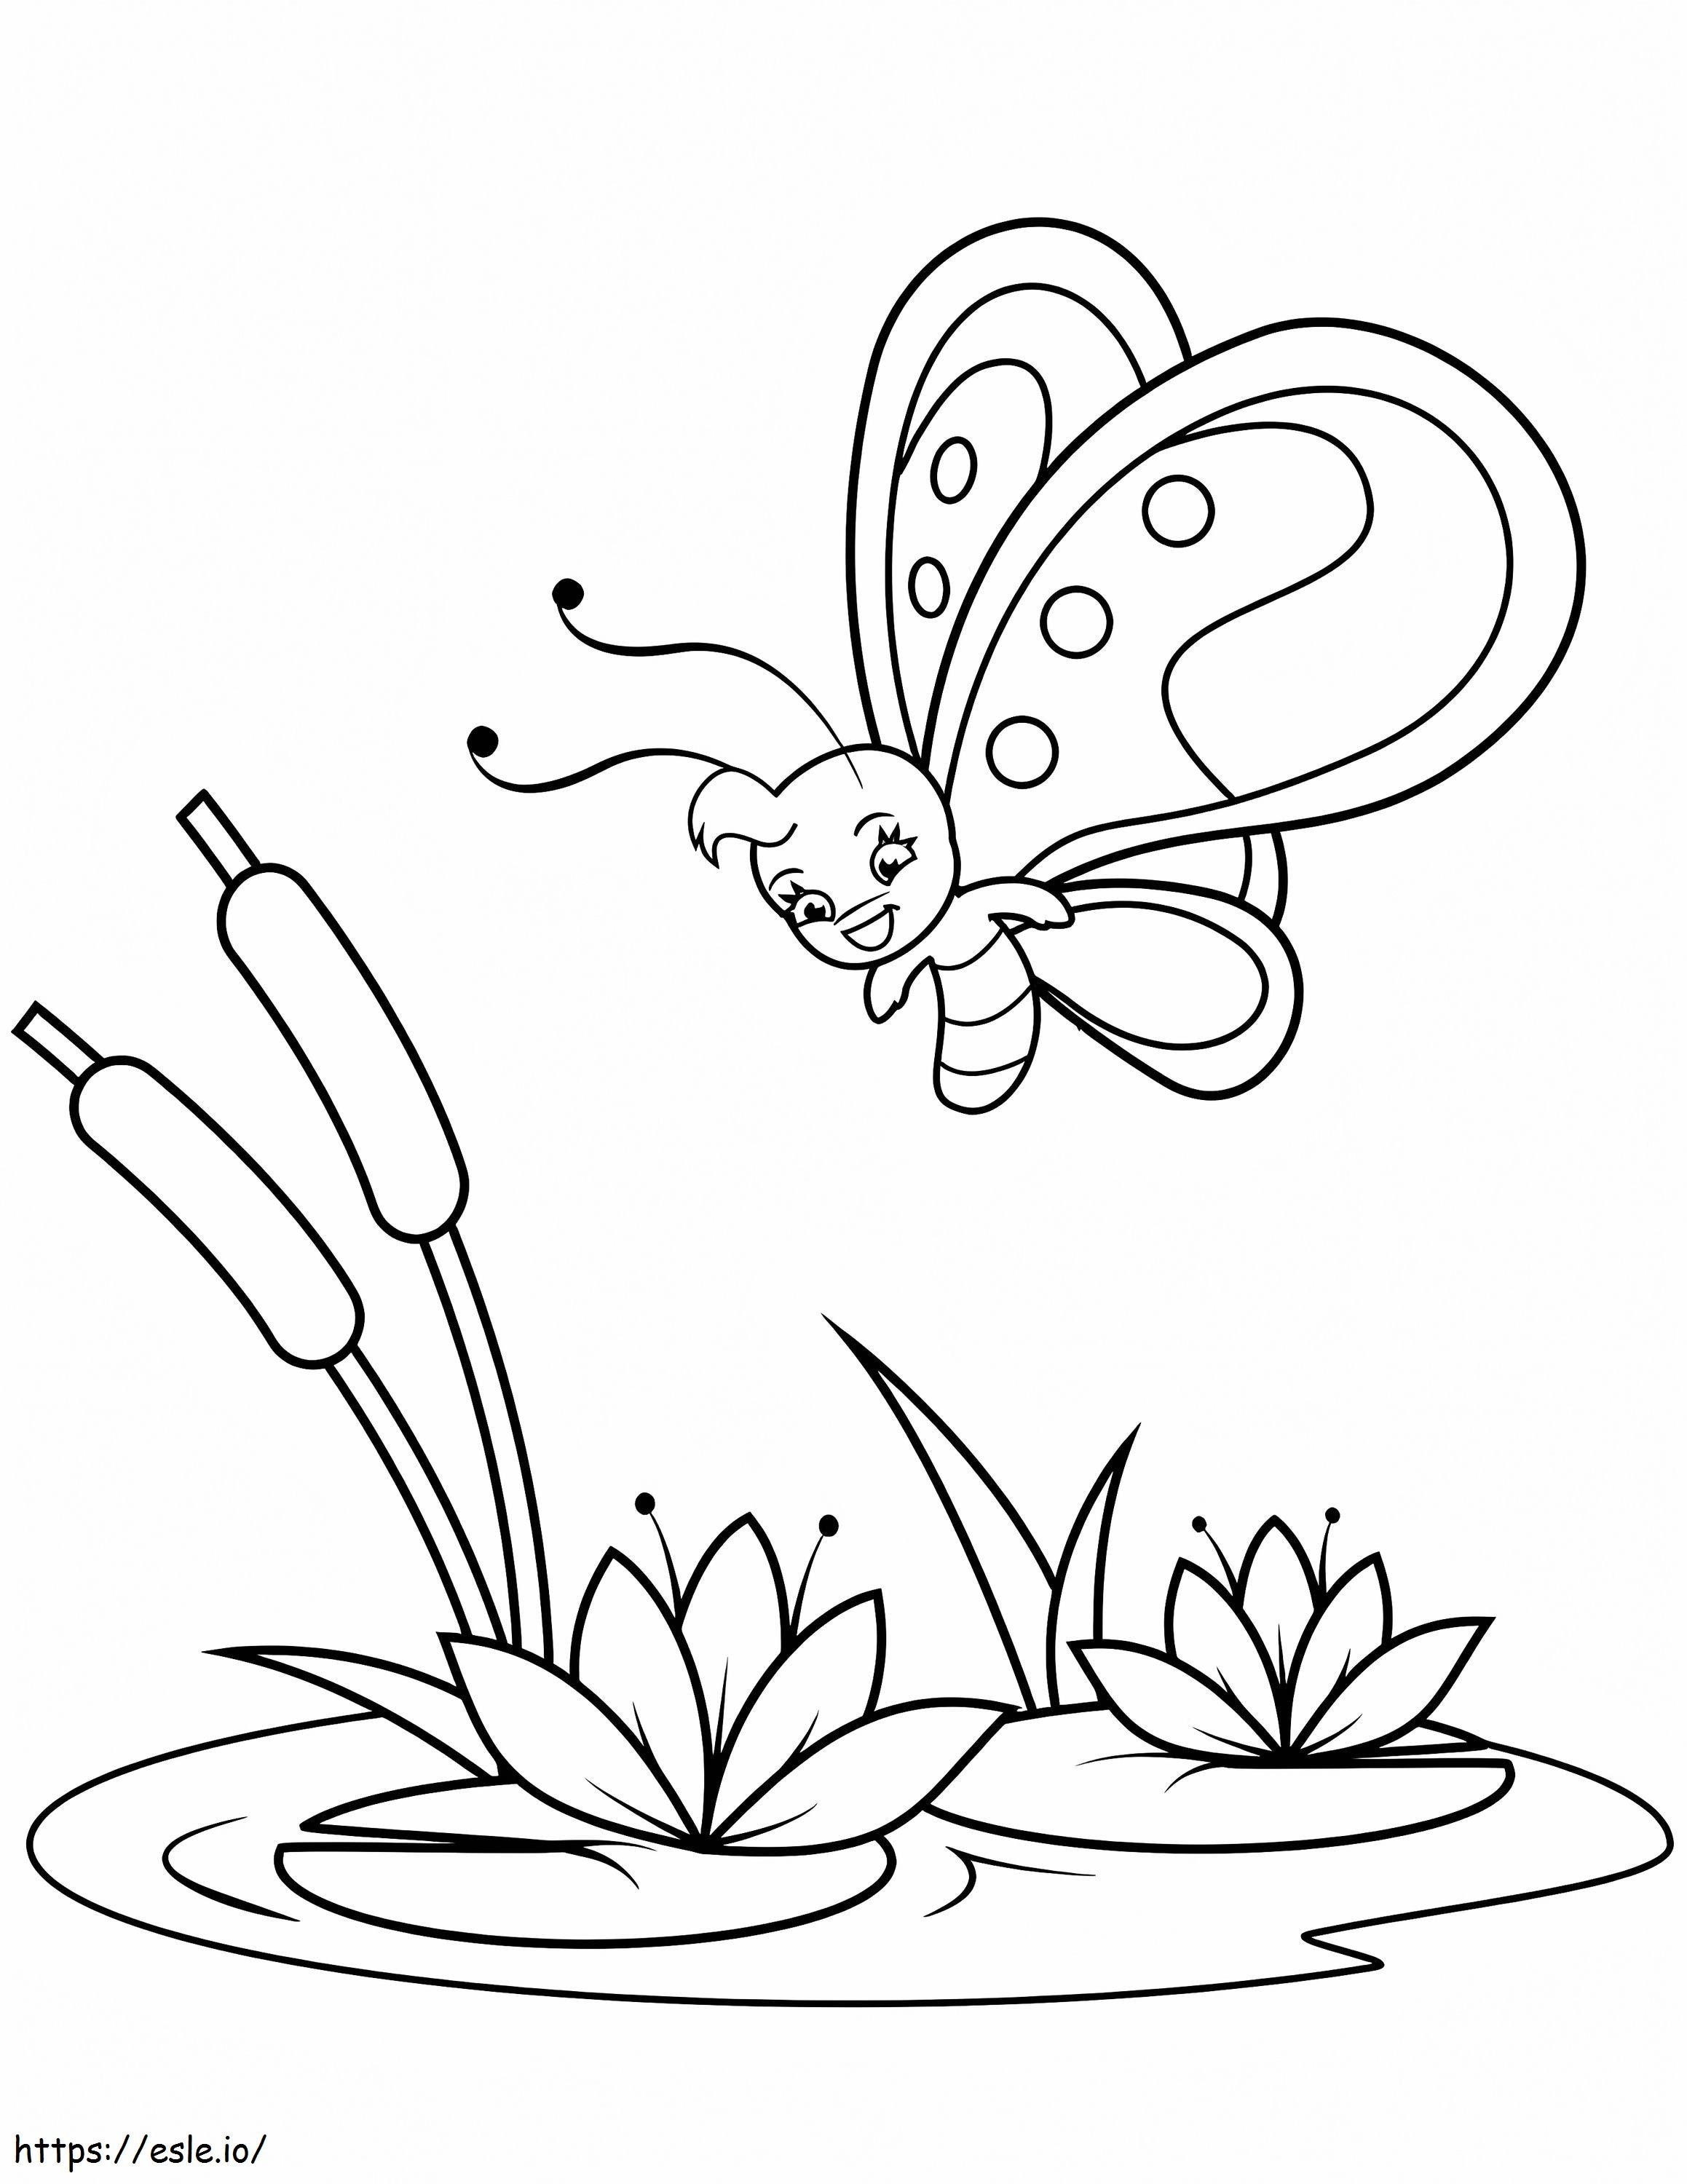 Cartoon-Schmetterling 1 ausmalbilder